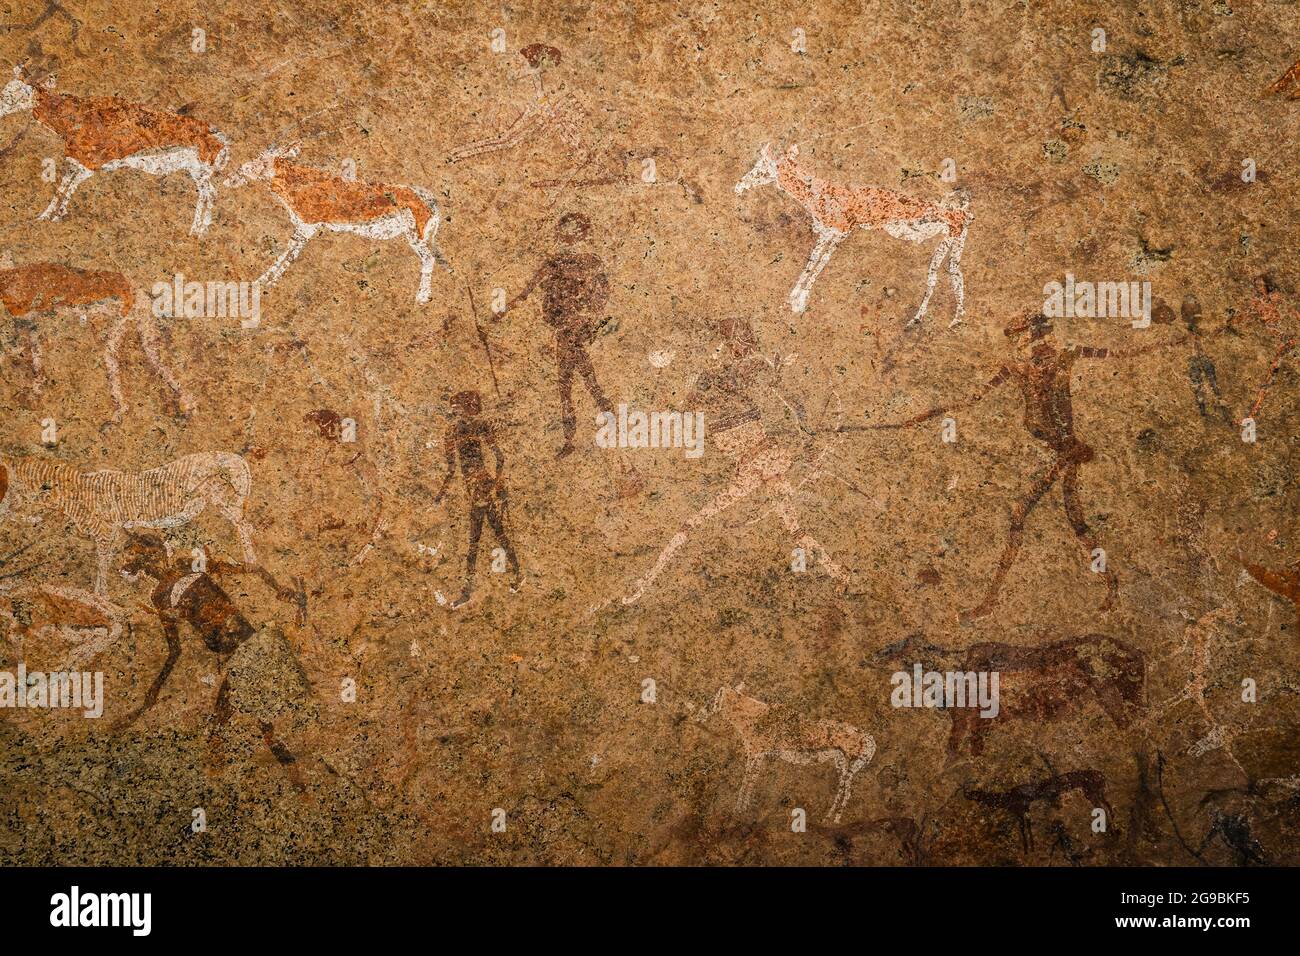 Célèbre peinture de grotte préhistorique connue sous le nom de la Vierge Blanche de Brandberg datant de 2000 ans et située au pied de la montagne Brandberg en Namibie. Banque D'Images